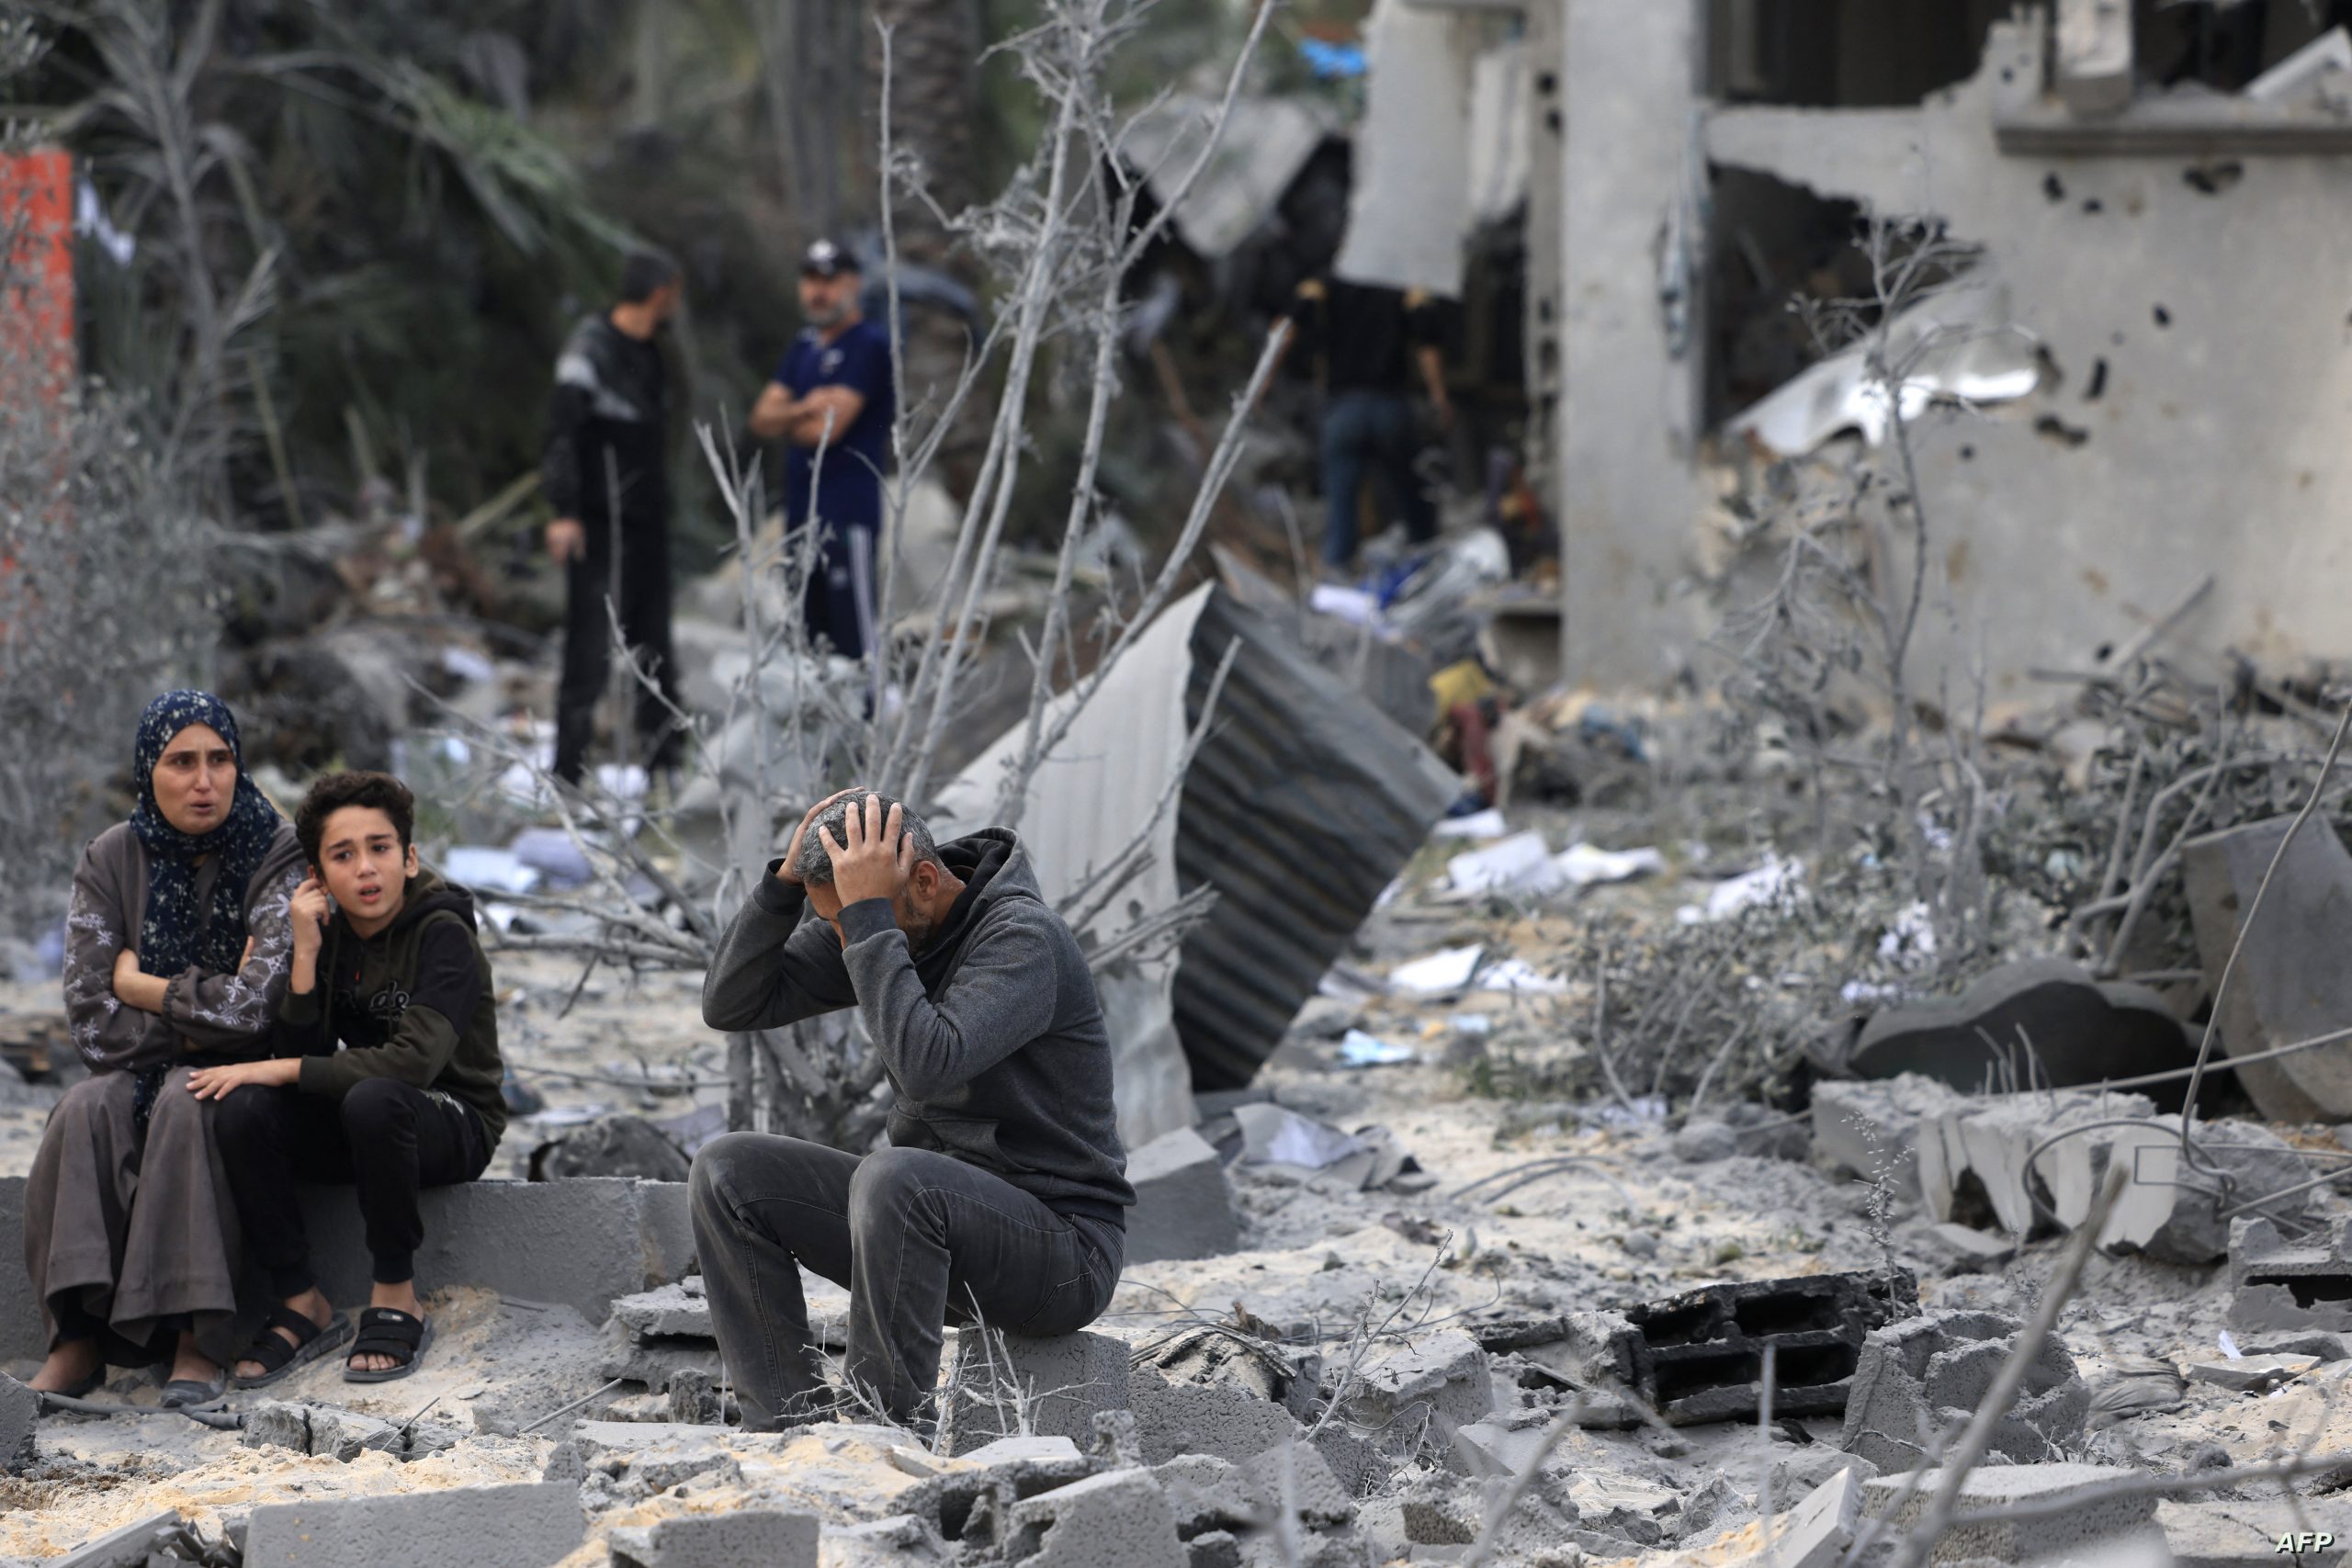 ترامب يدعو الإحتلال الإسرائيلي لإنهاء الحرب على غزة سريعاً